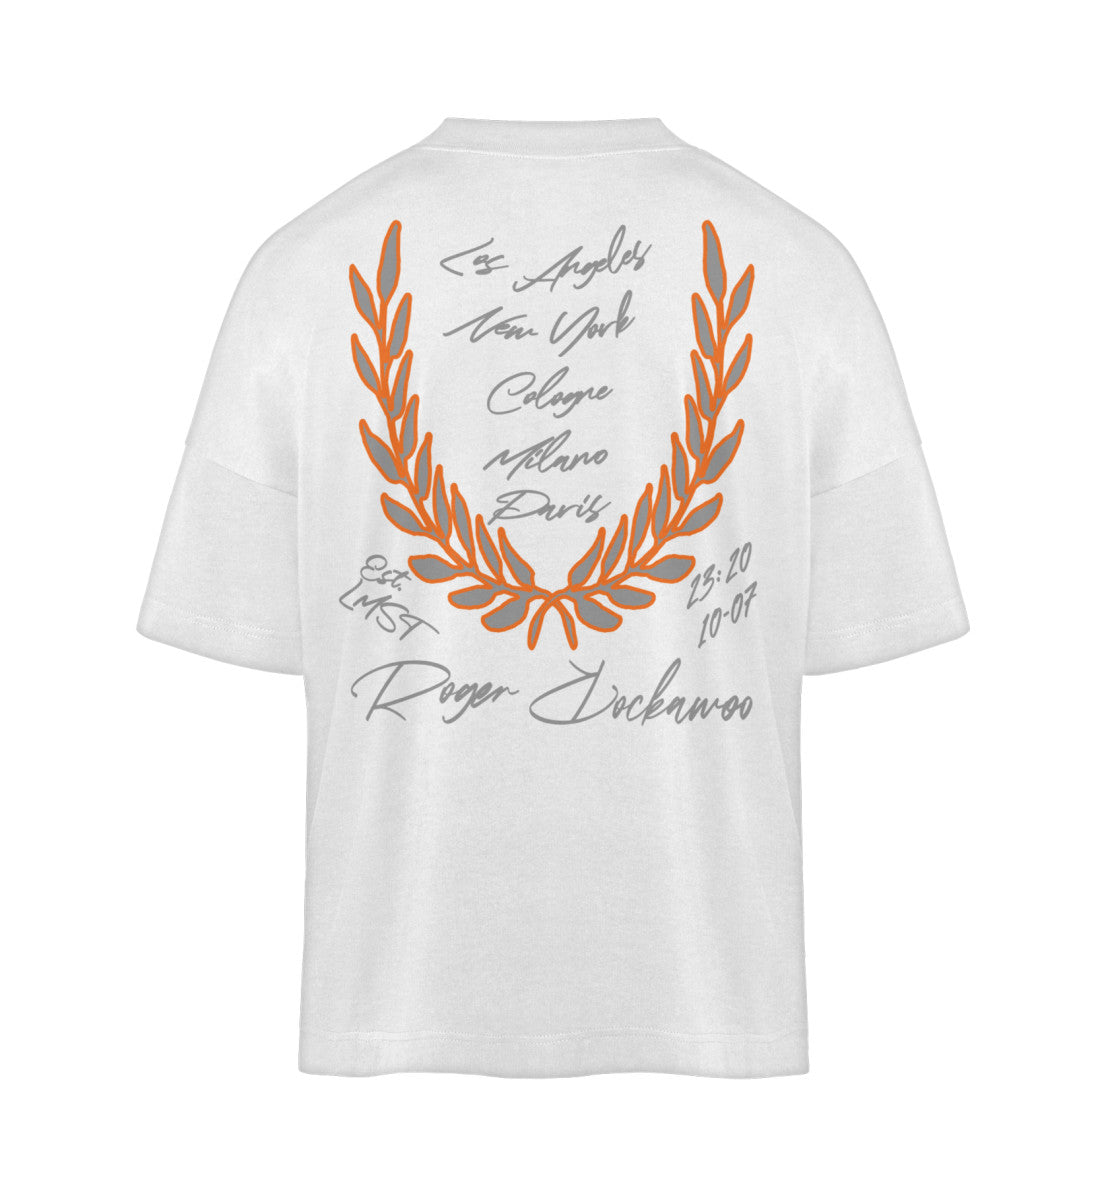 Weißes T-Shirt Damen Herren Unisex mit Print Design der Basketball Downtown Kollektion von Roger Rockawoo Clothing